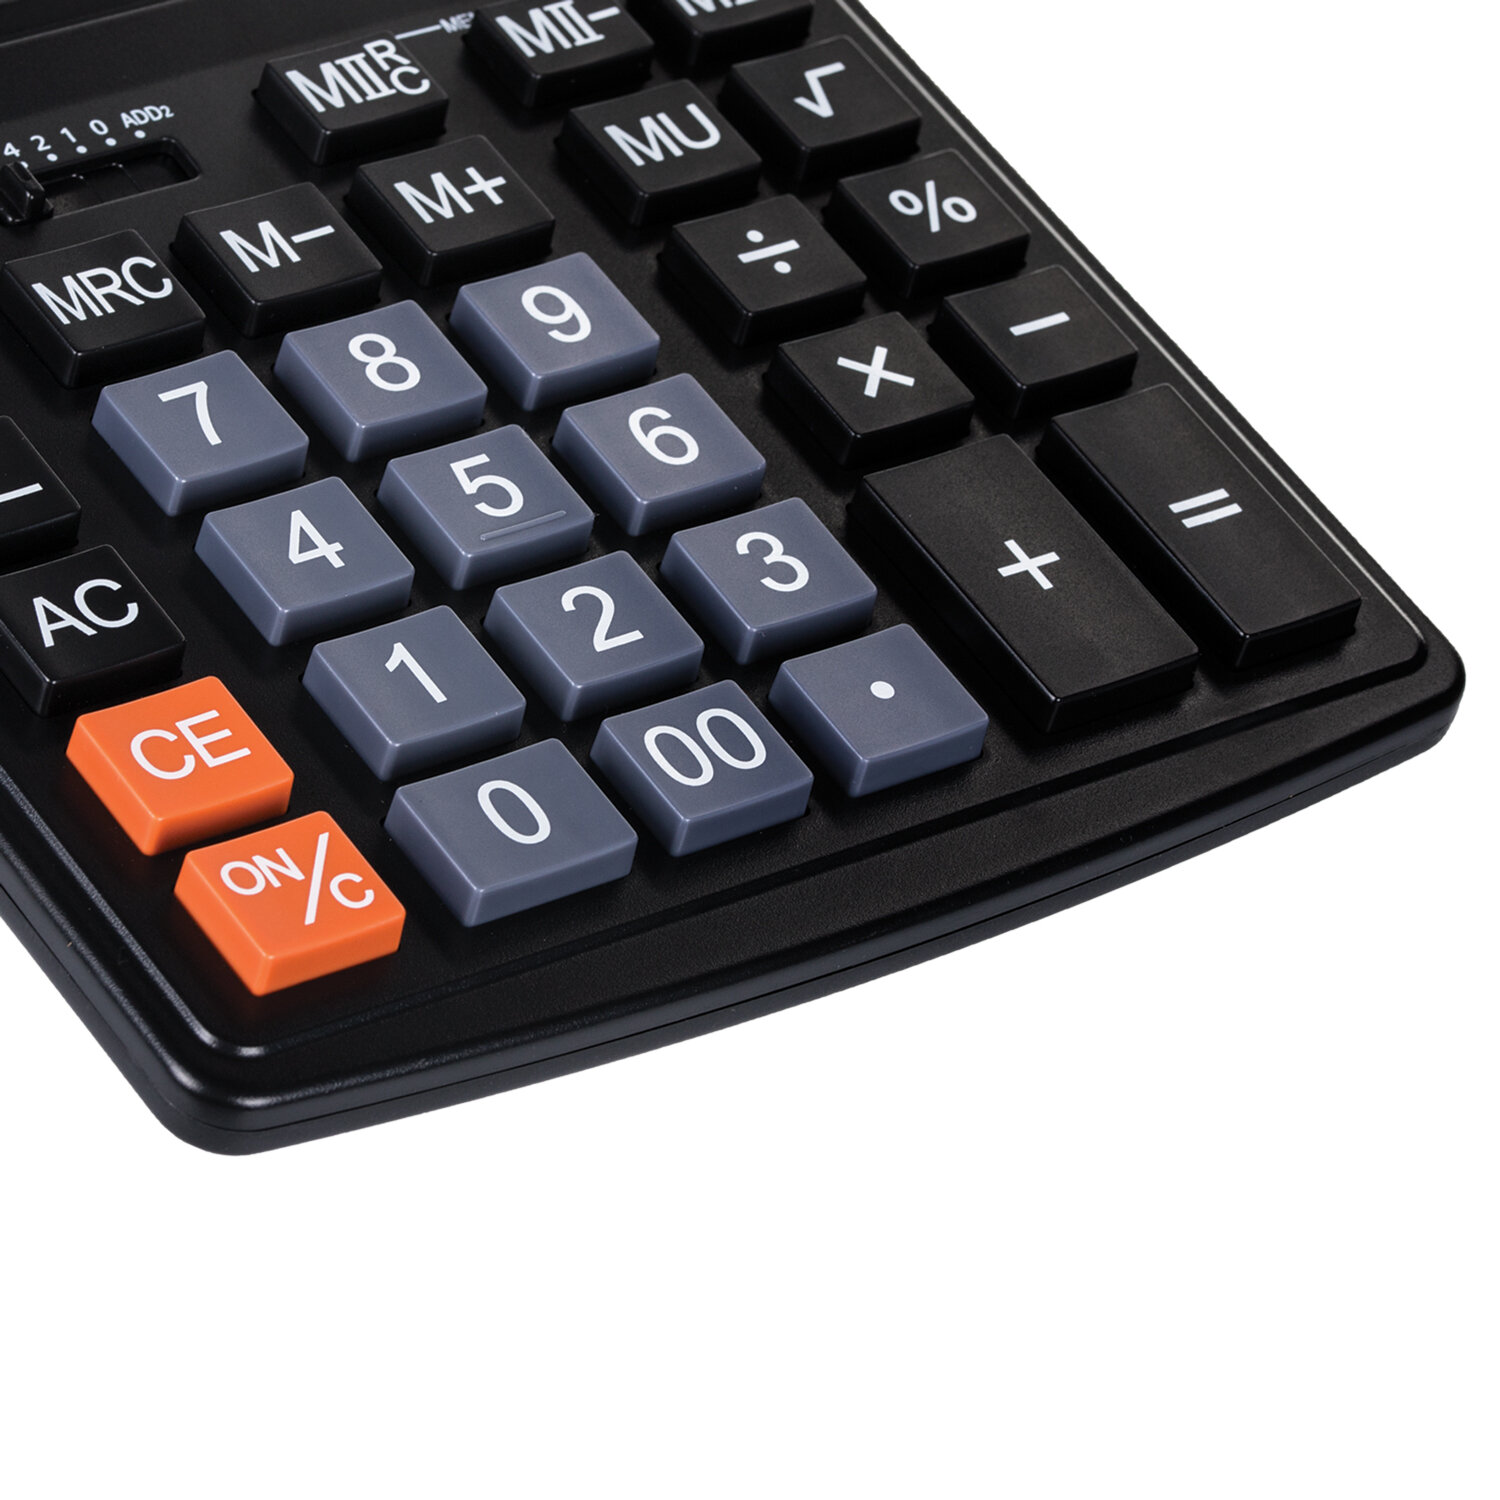 Калькулятор STAFF STF-444-12, 12 разрядов от интернет-магазина kancelyar.by